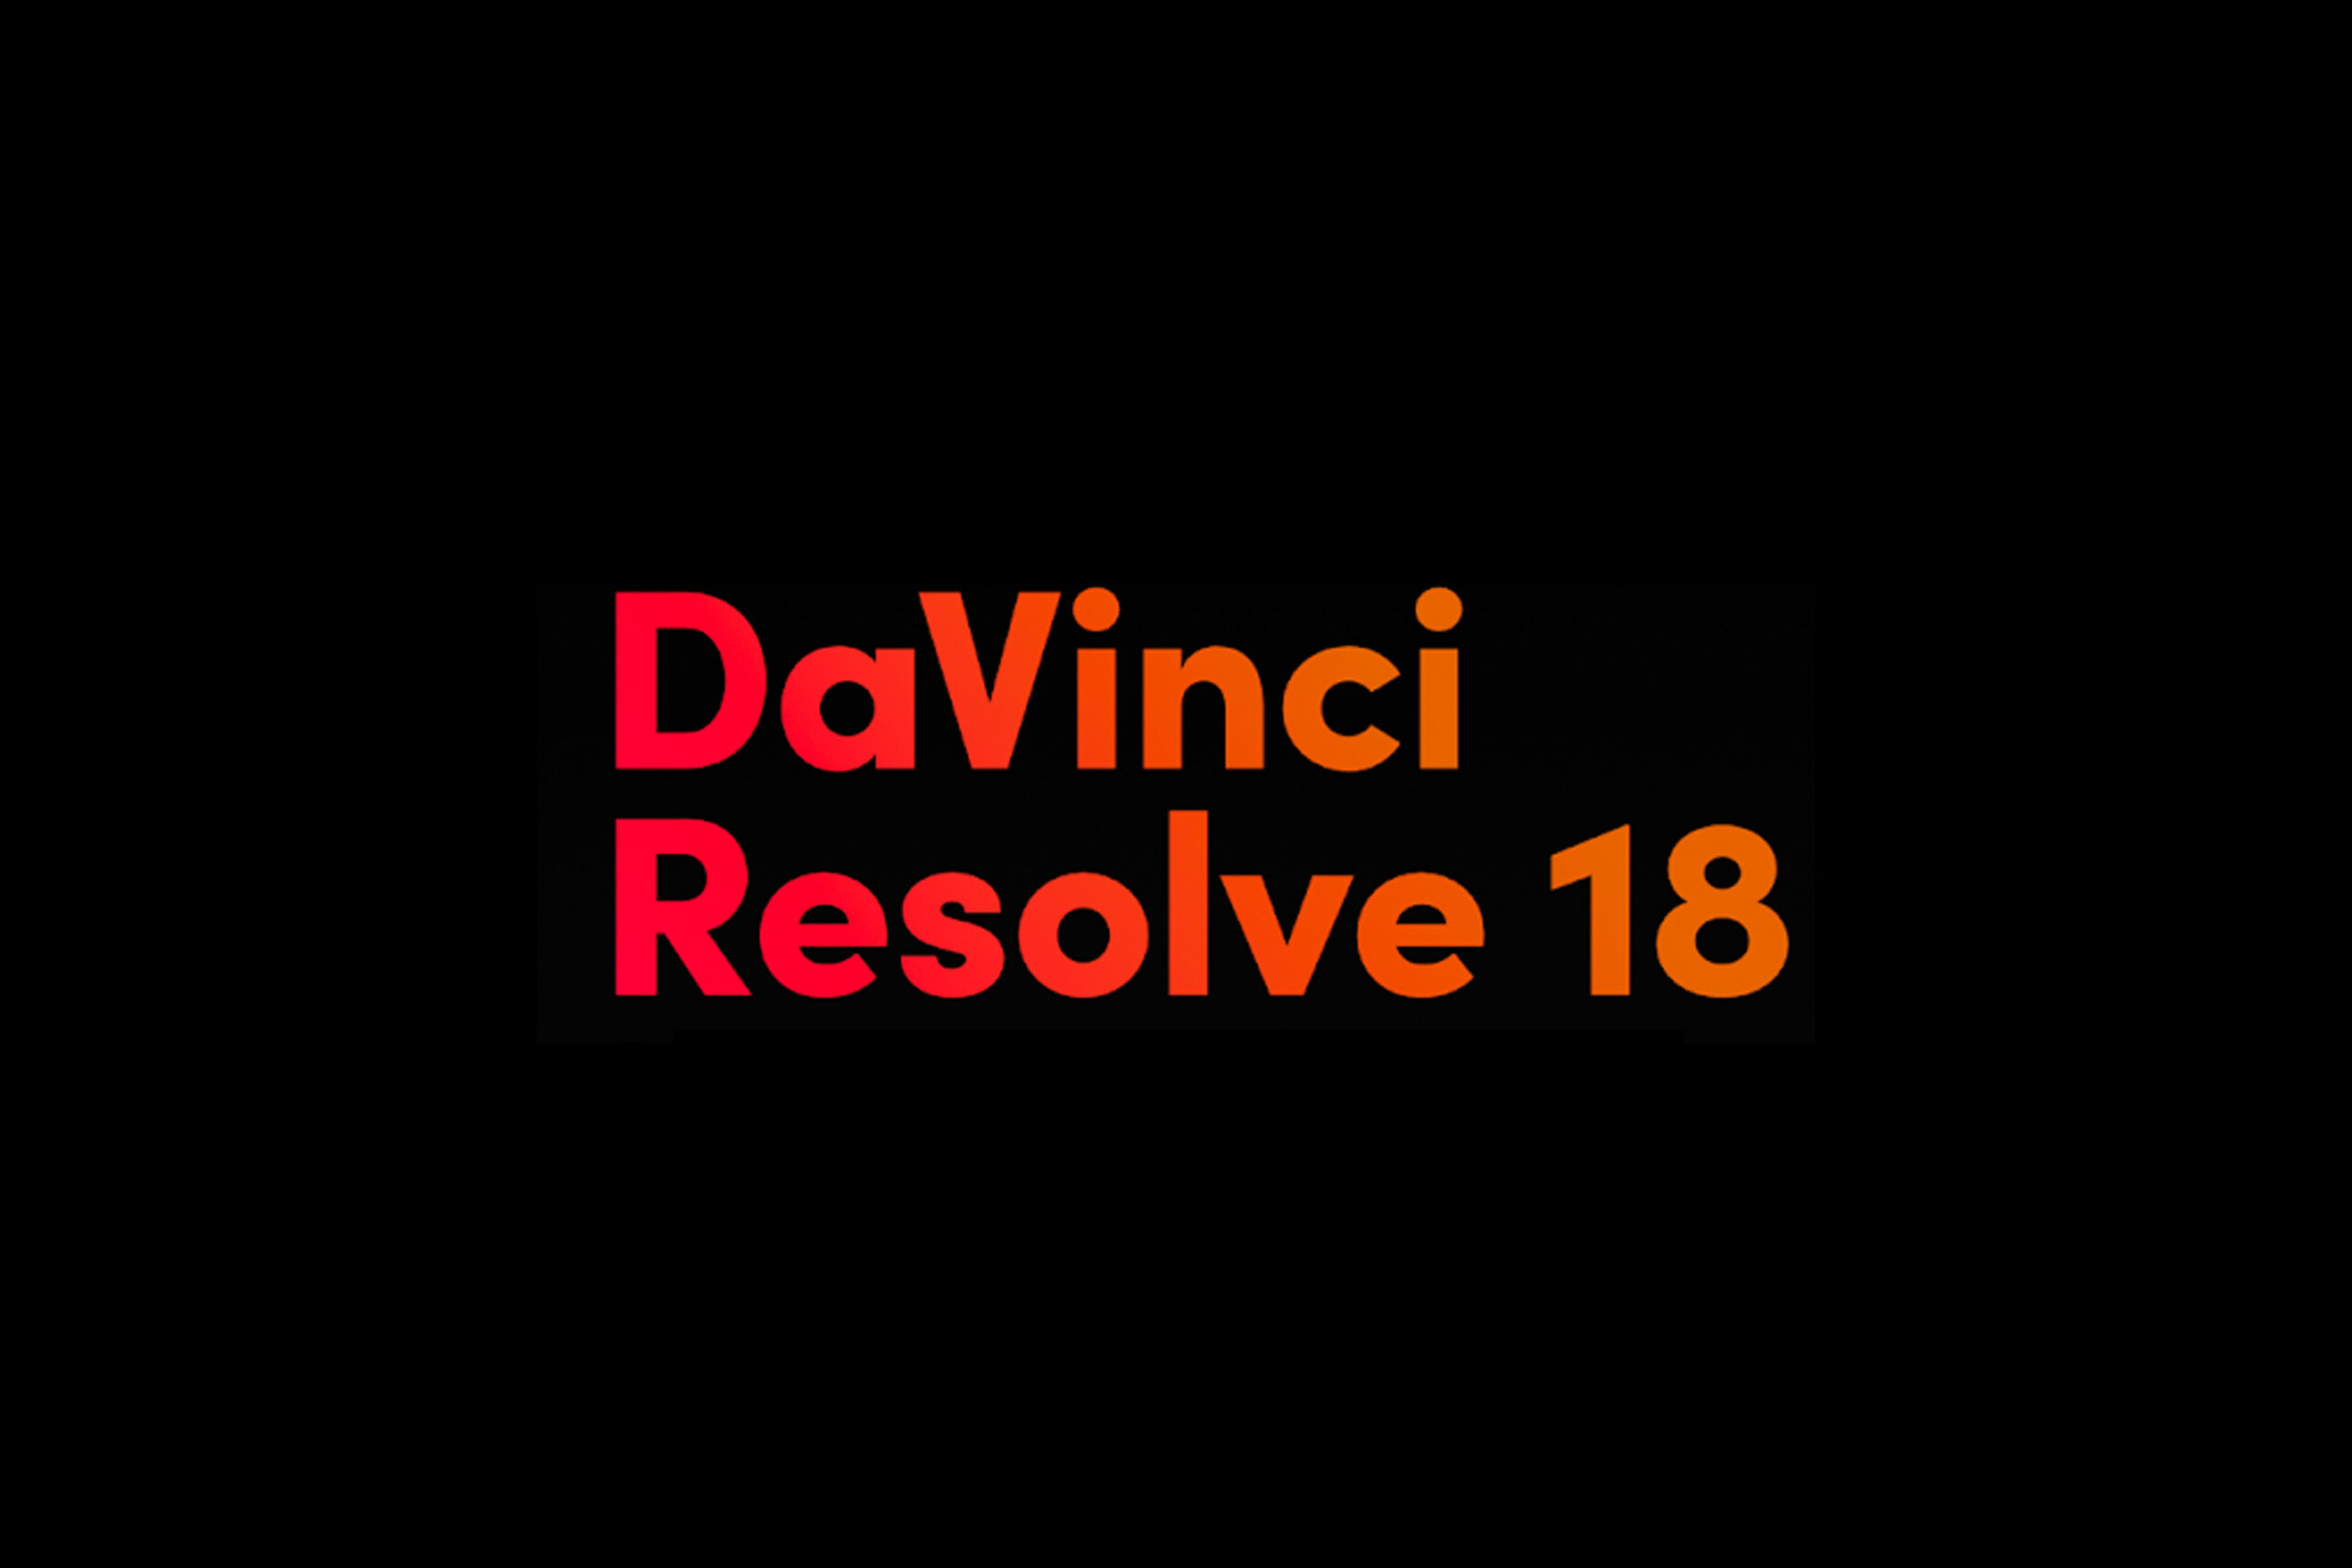 davinci resolve 18.5.1